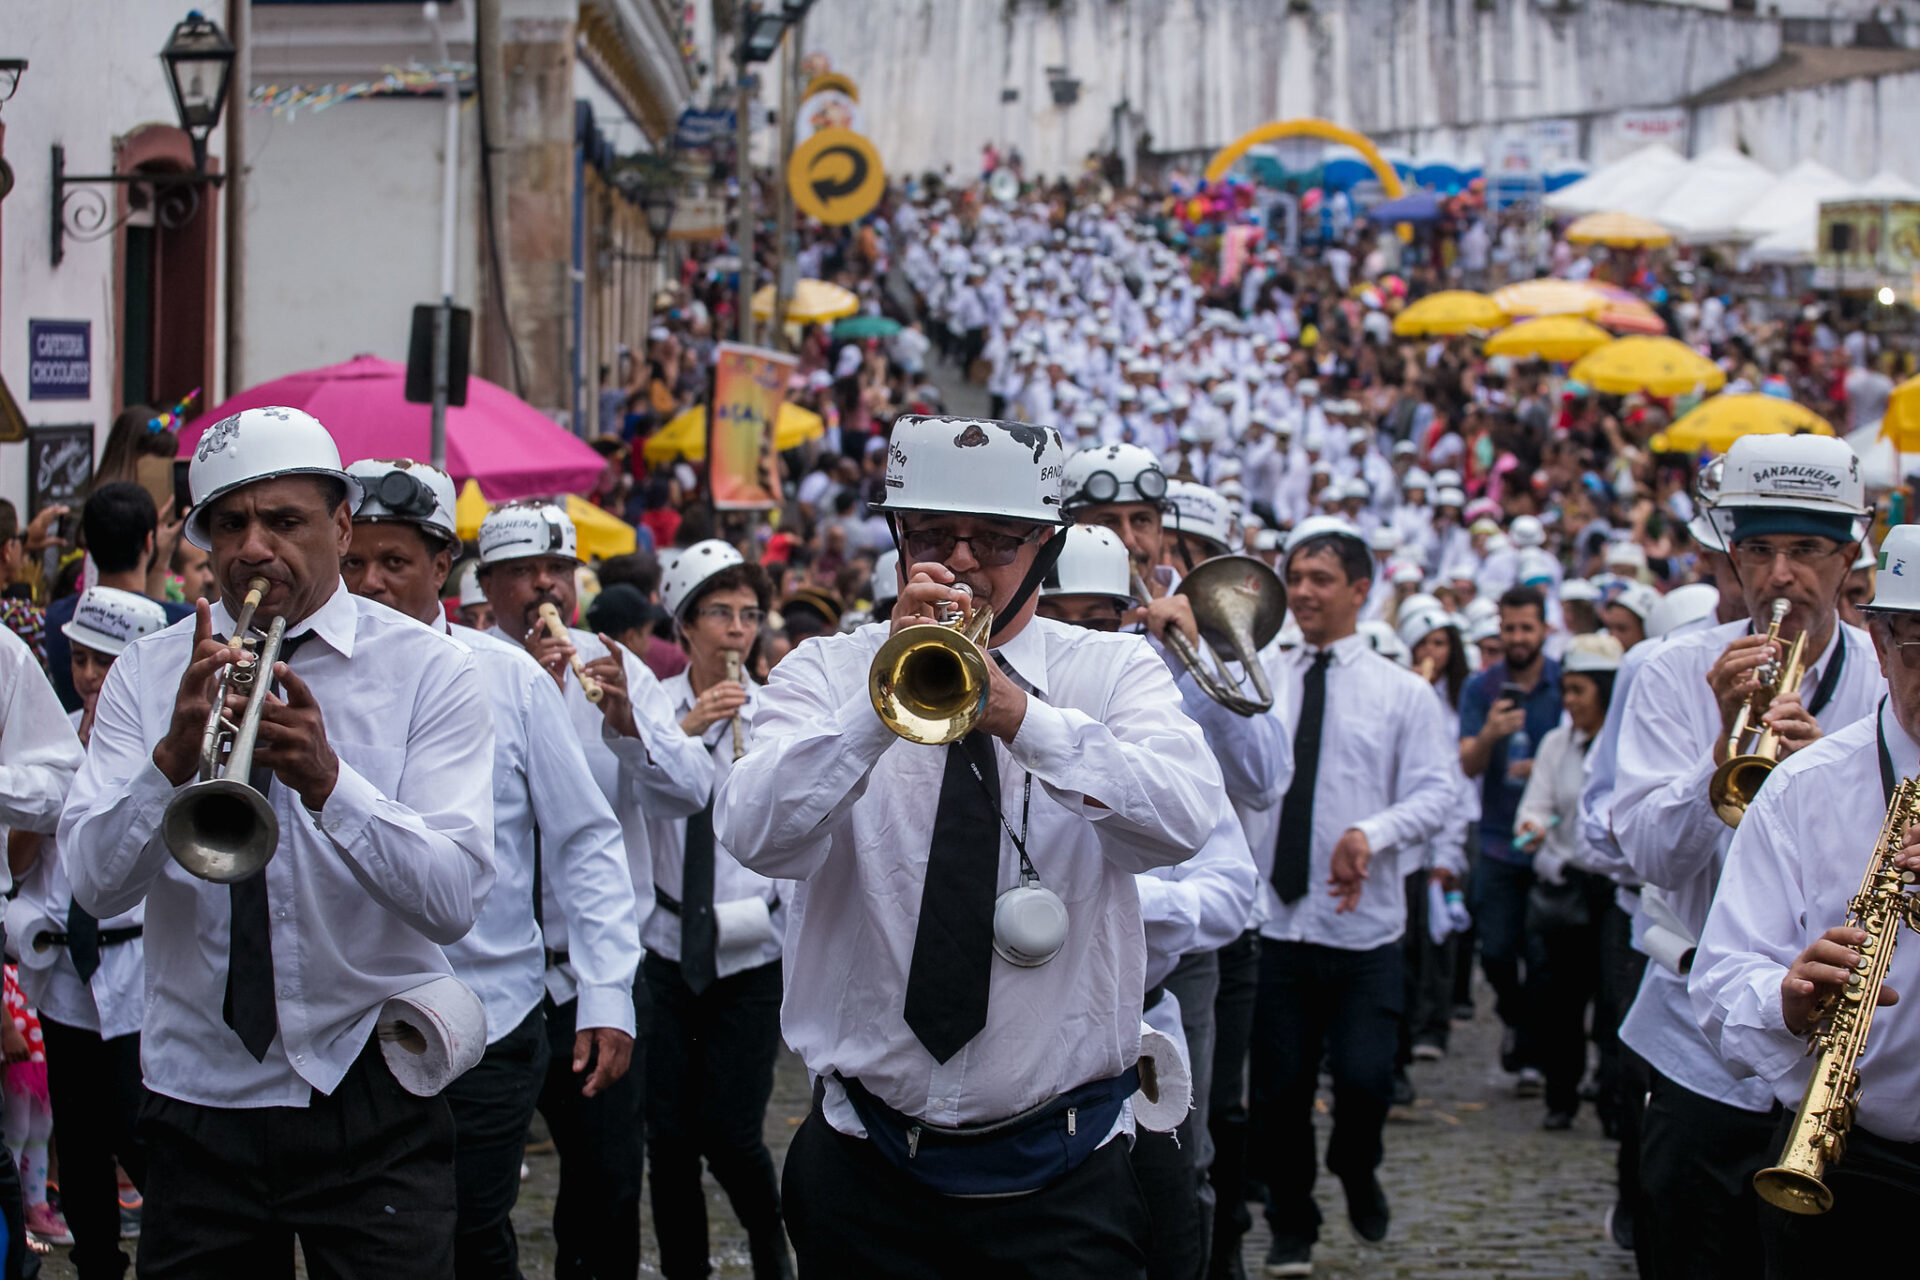 Bandalheira Folclórica comemora 50 anos com cortejo em Ouro Preto